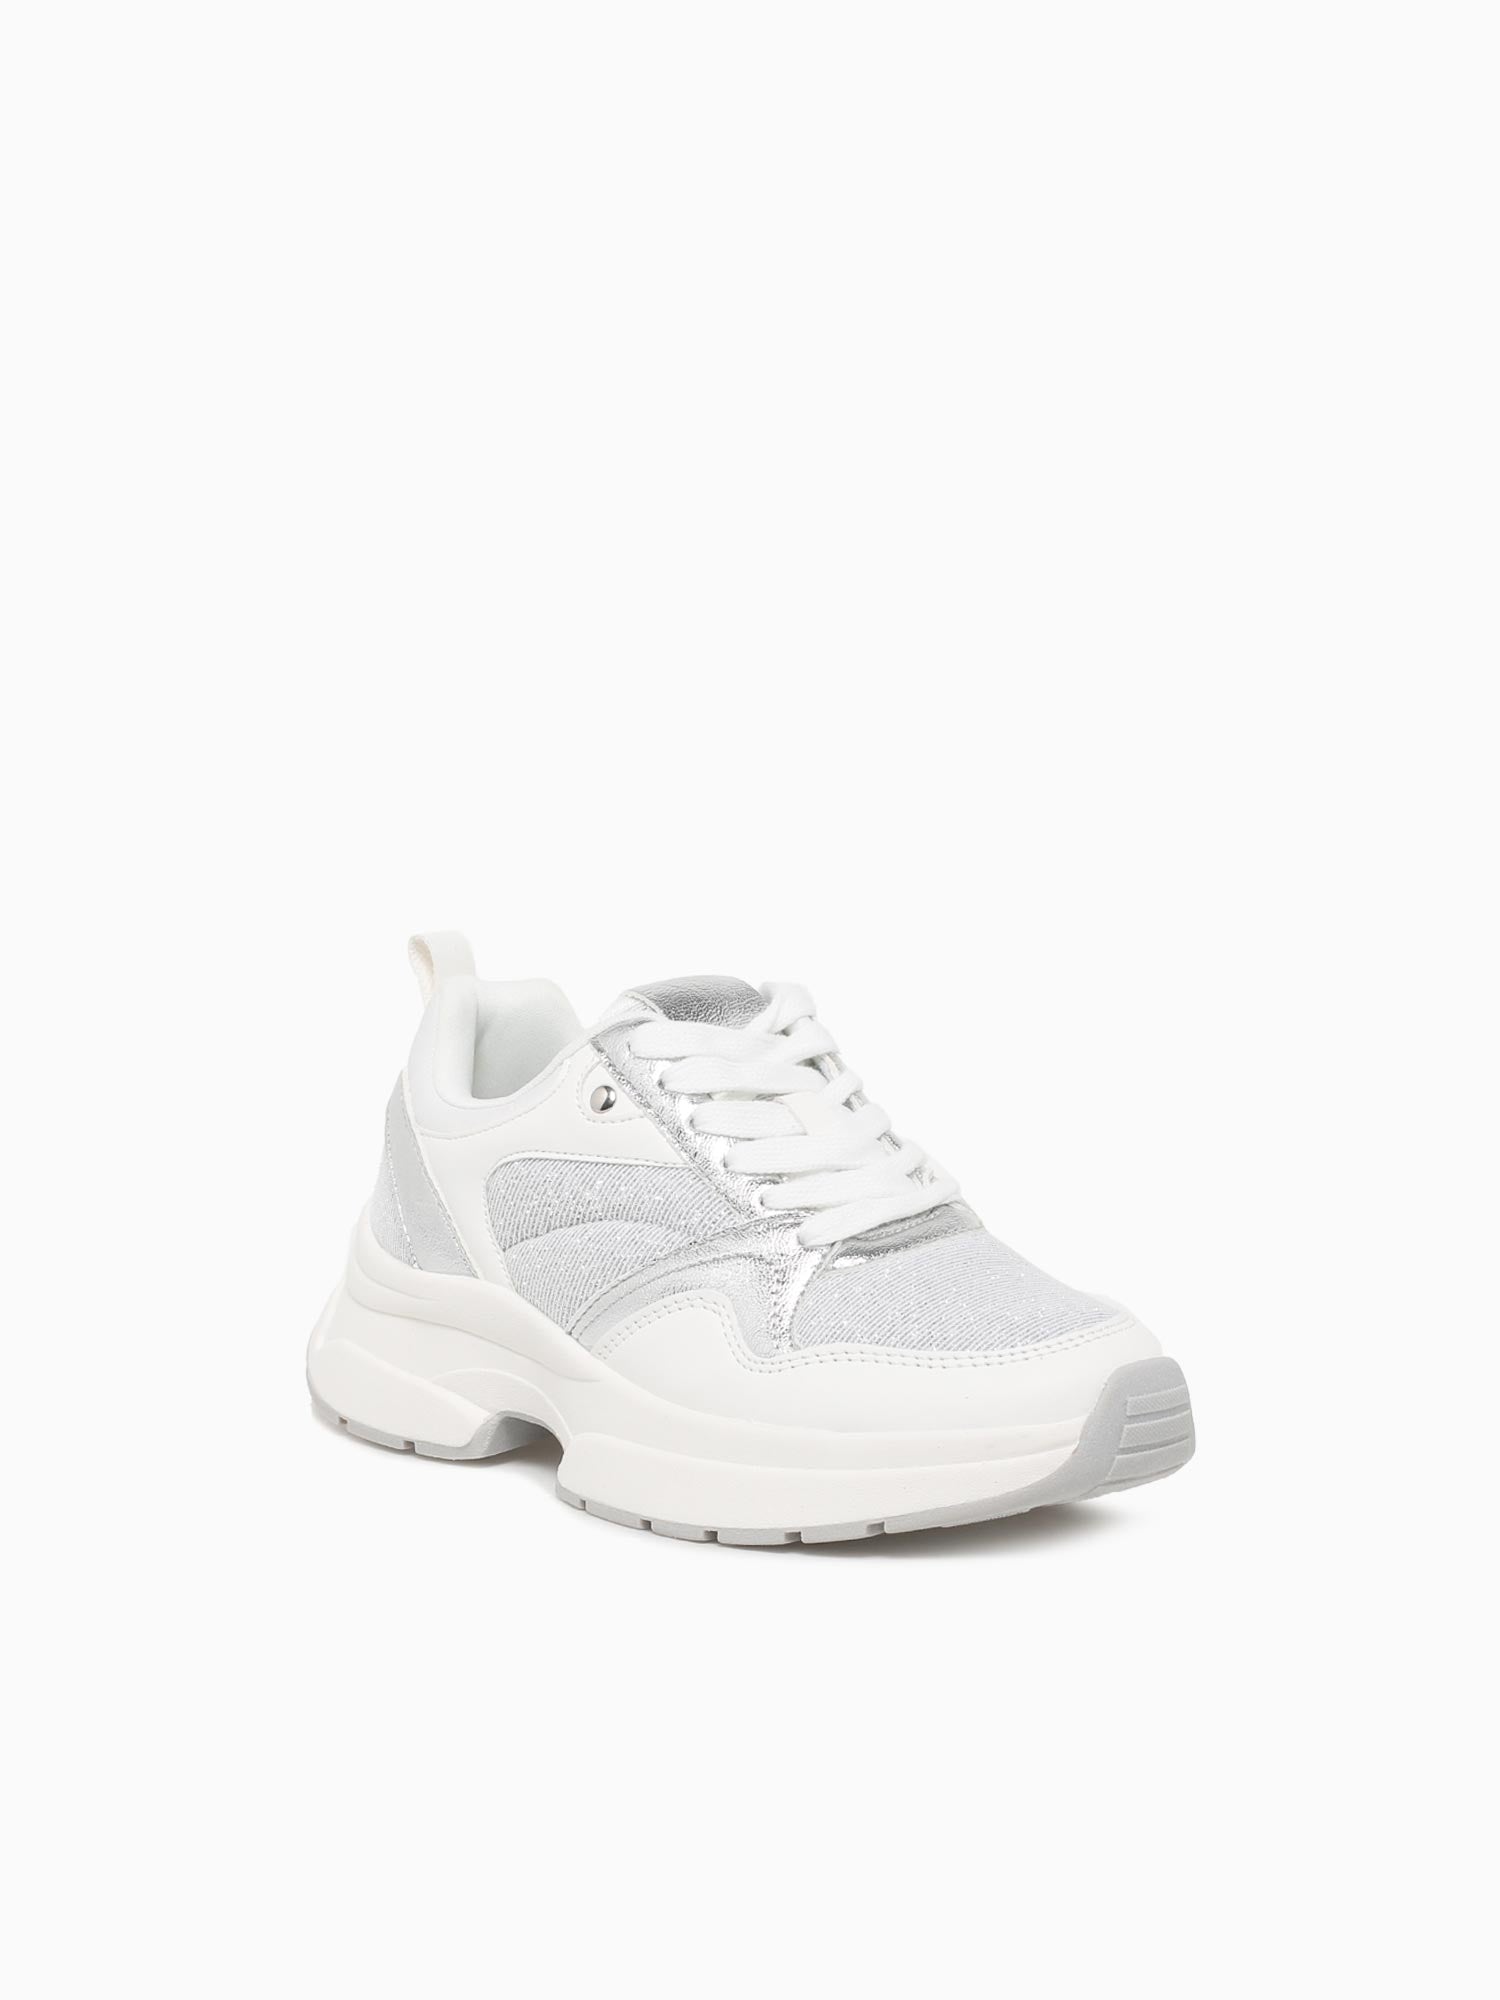 Arwen White Silver Txt– BKS Shoes